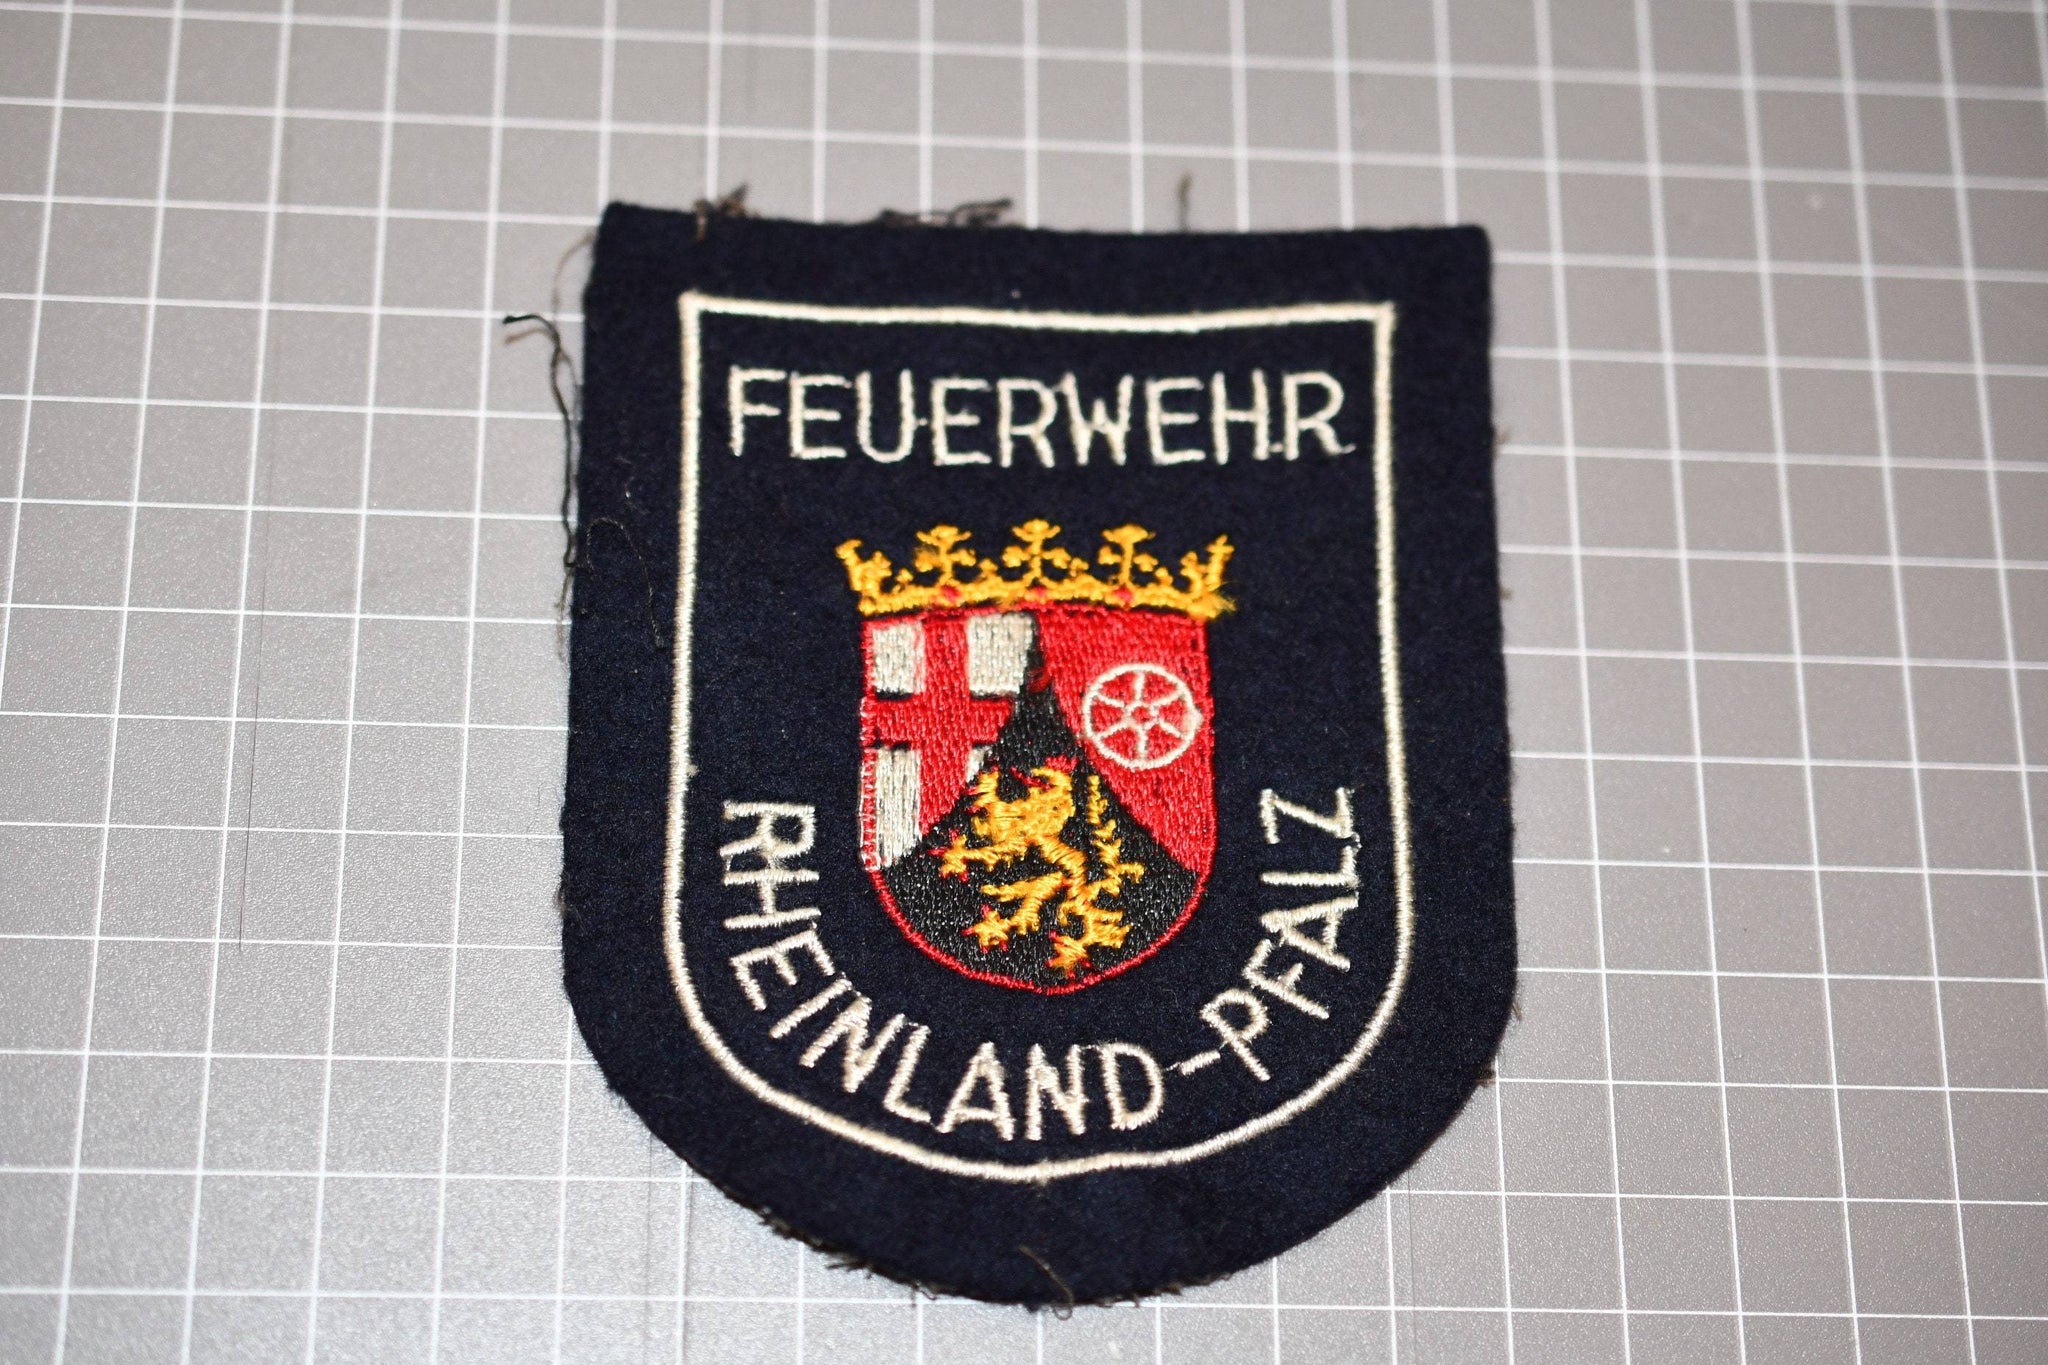 German Fire Service Feuerwehr Reinland-Pfaiz Patch (B5)